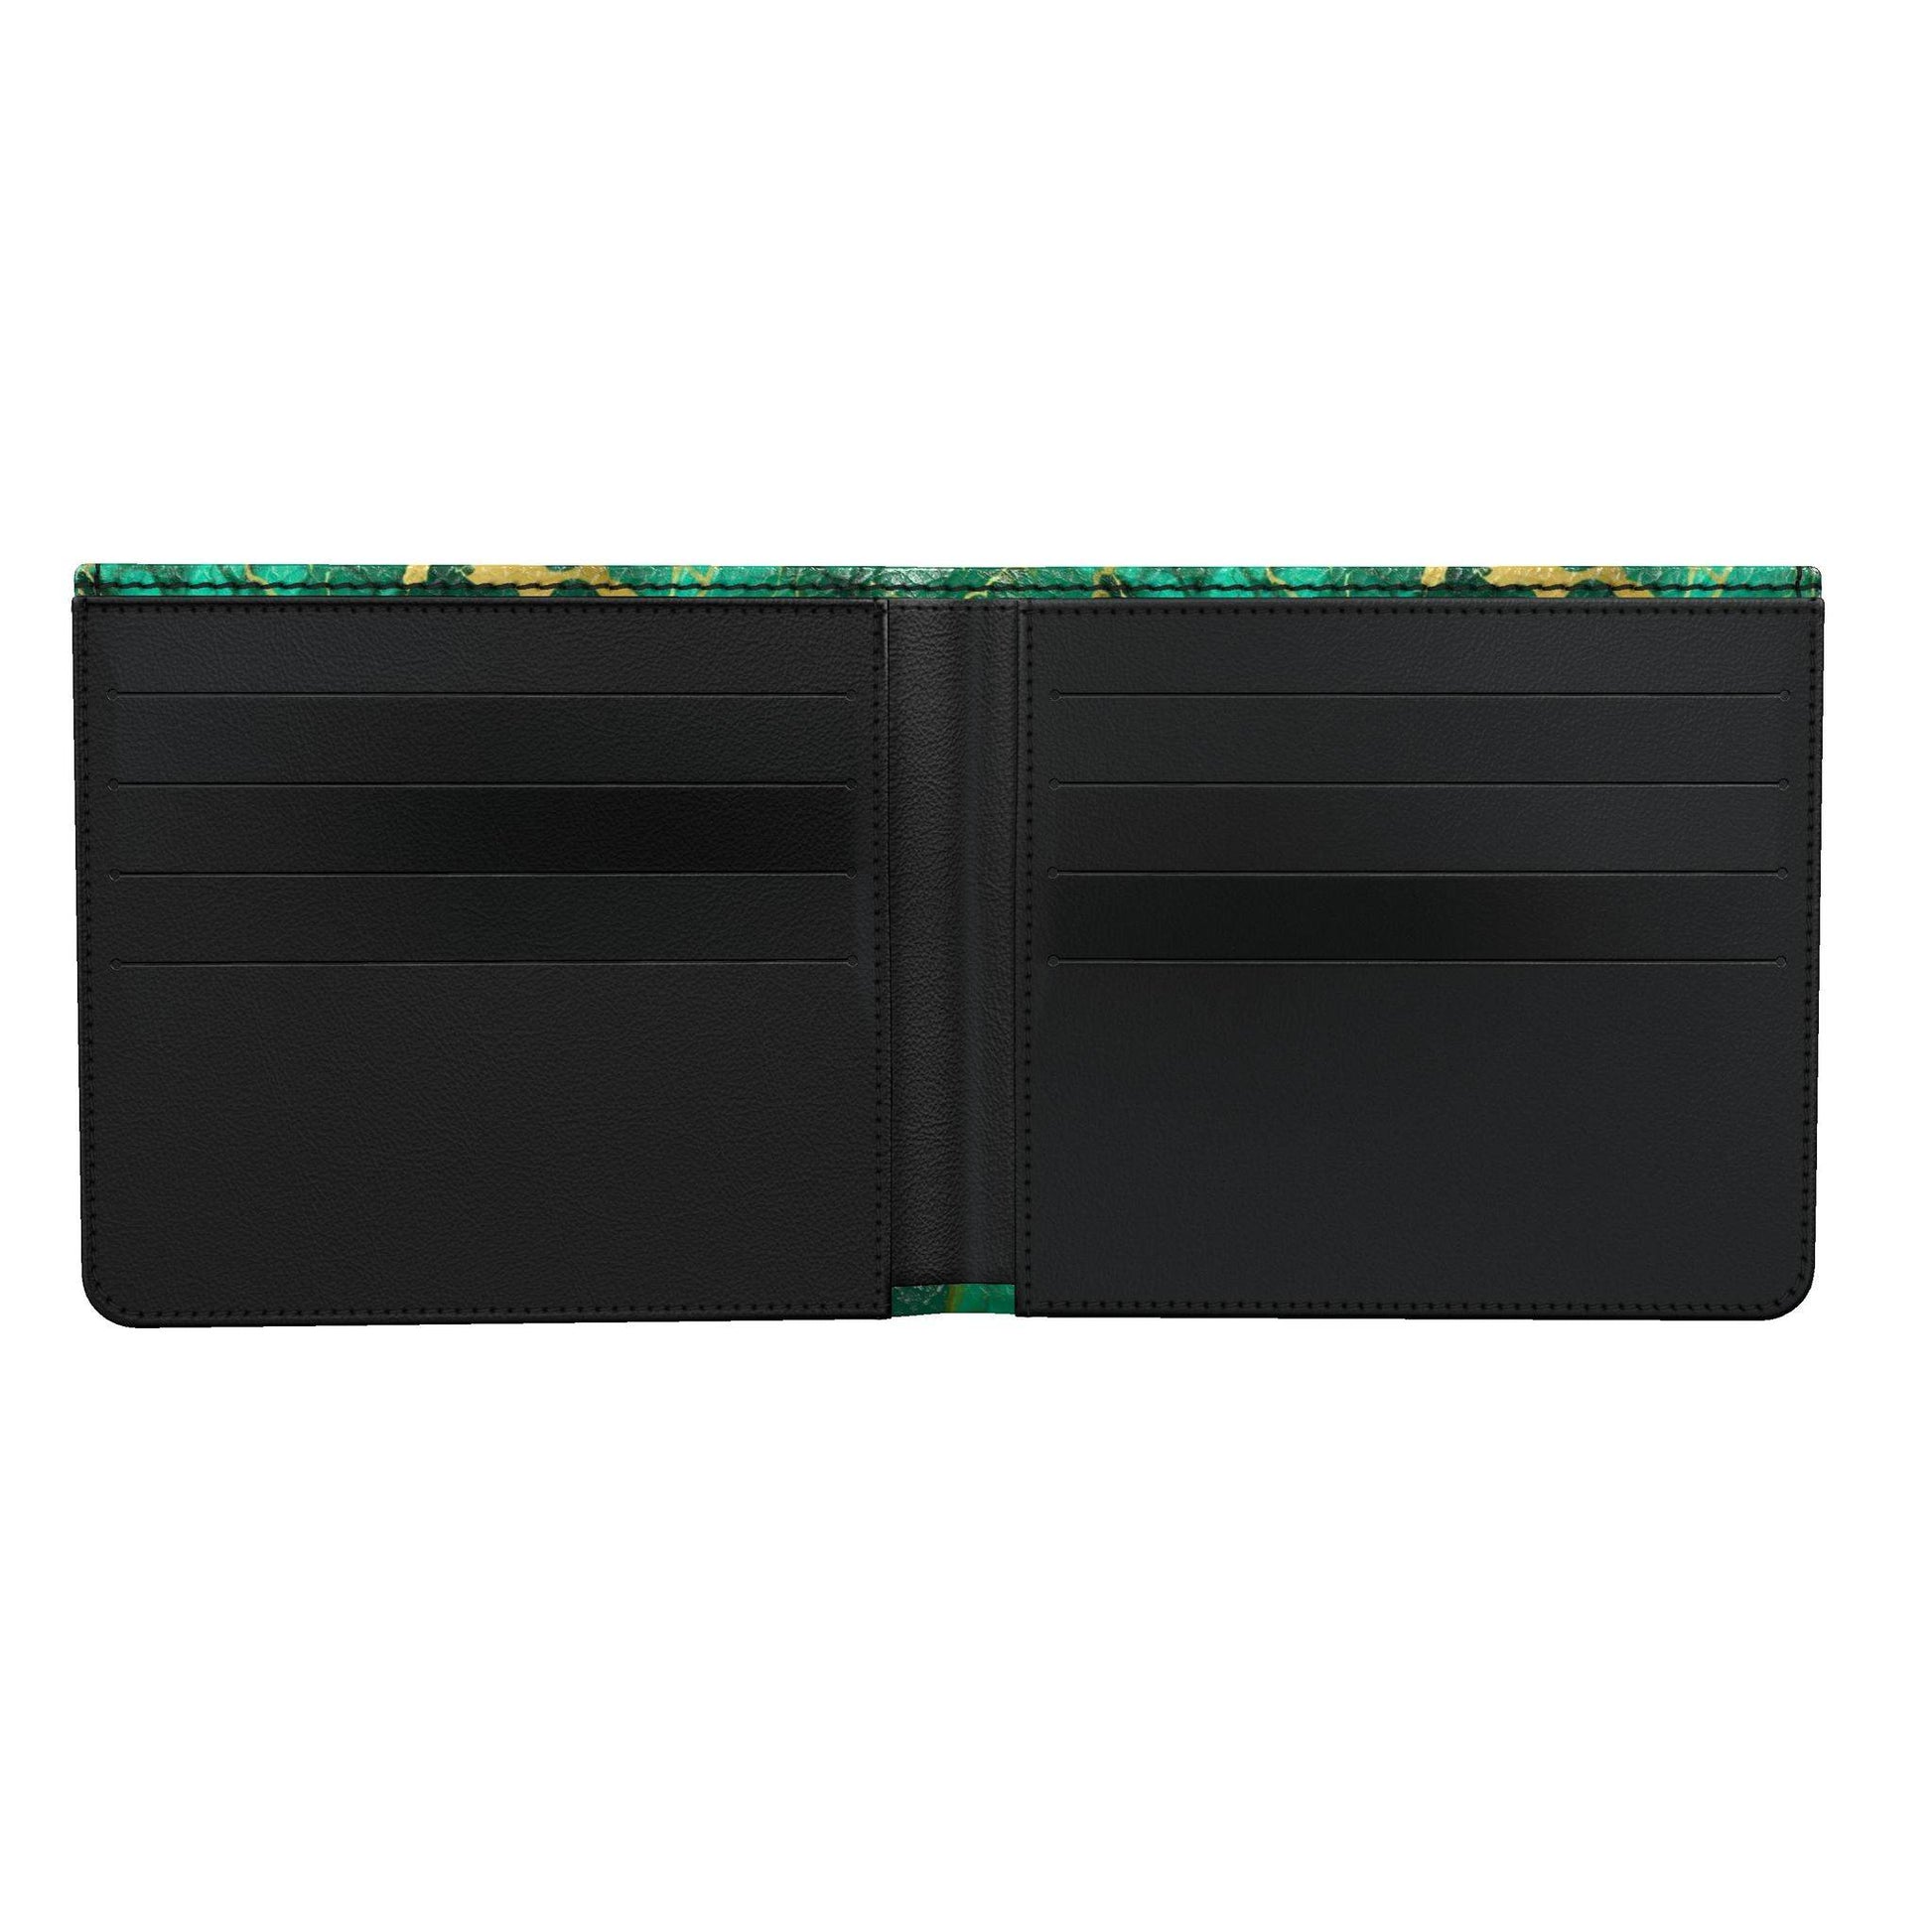 Faux Malachite & Gold Leather Bi-fold Wallet by Studio Ten Design